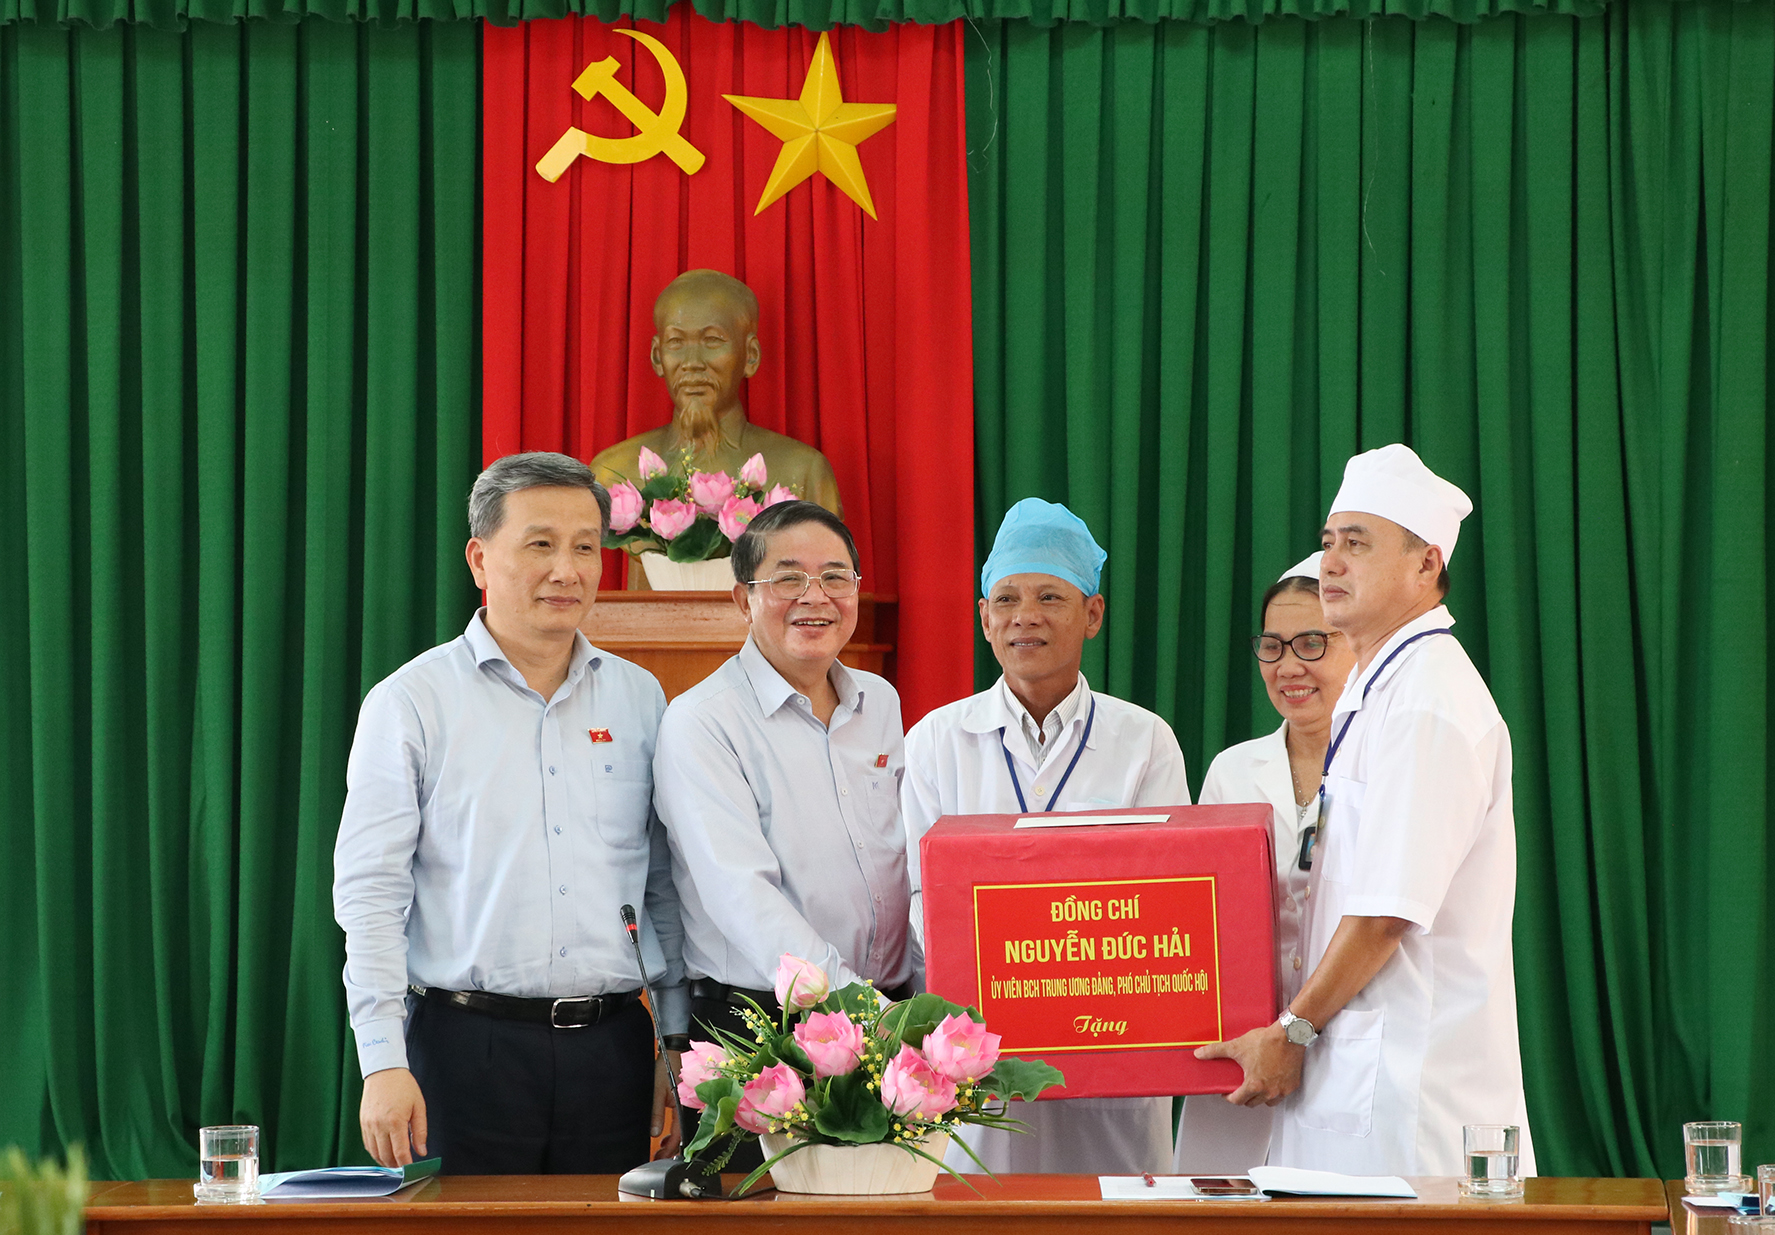 Phó Chủ tịch Quốc hội Nguyễn Đức Hải tặng quà động viên cán bộ, viên chức đang công tác tại Trung tâm Y tế Quân dân y huyện đảo Phú Quý. Ảnh: Thu Dân